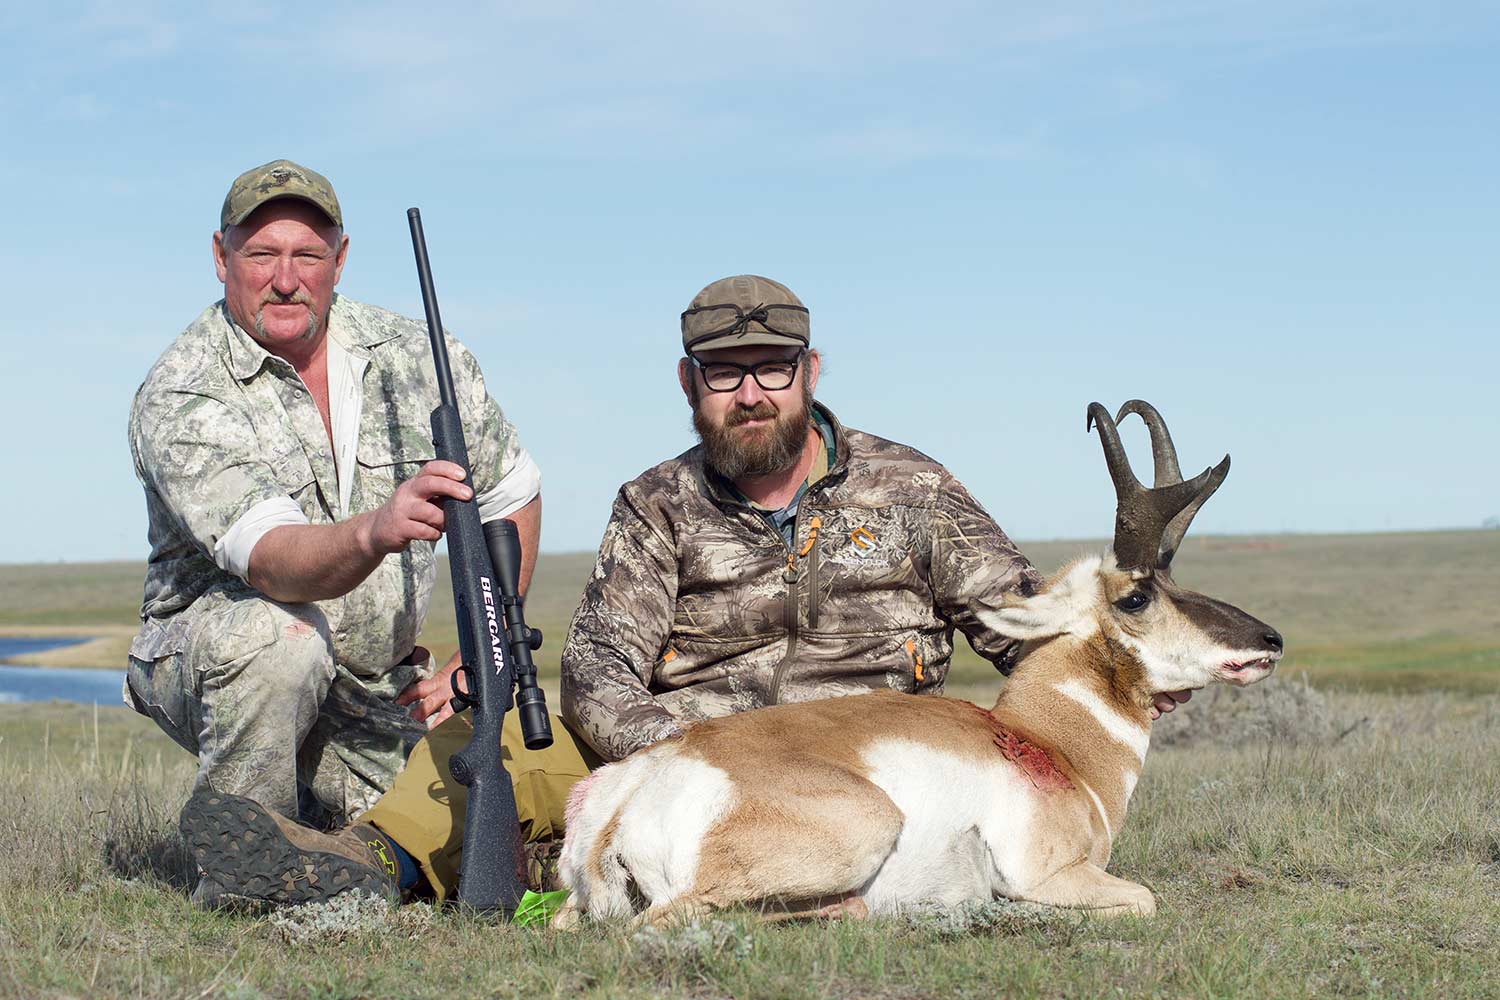 Two hunters kneel behind an antelope.